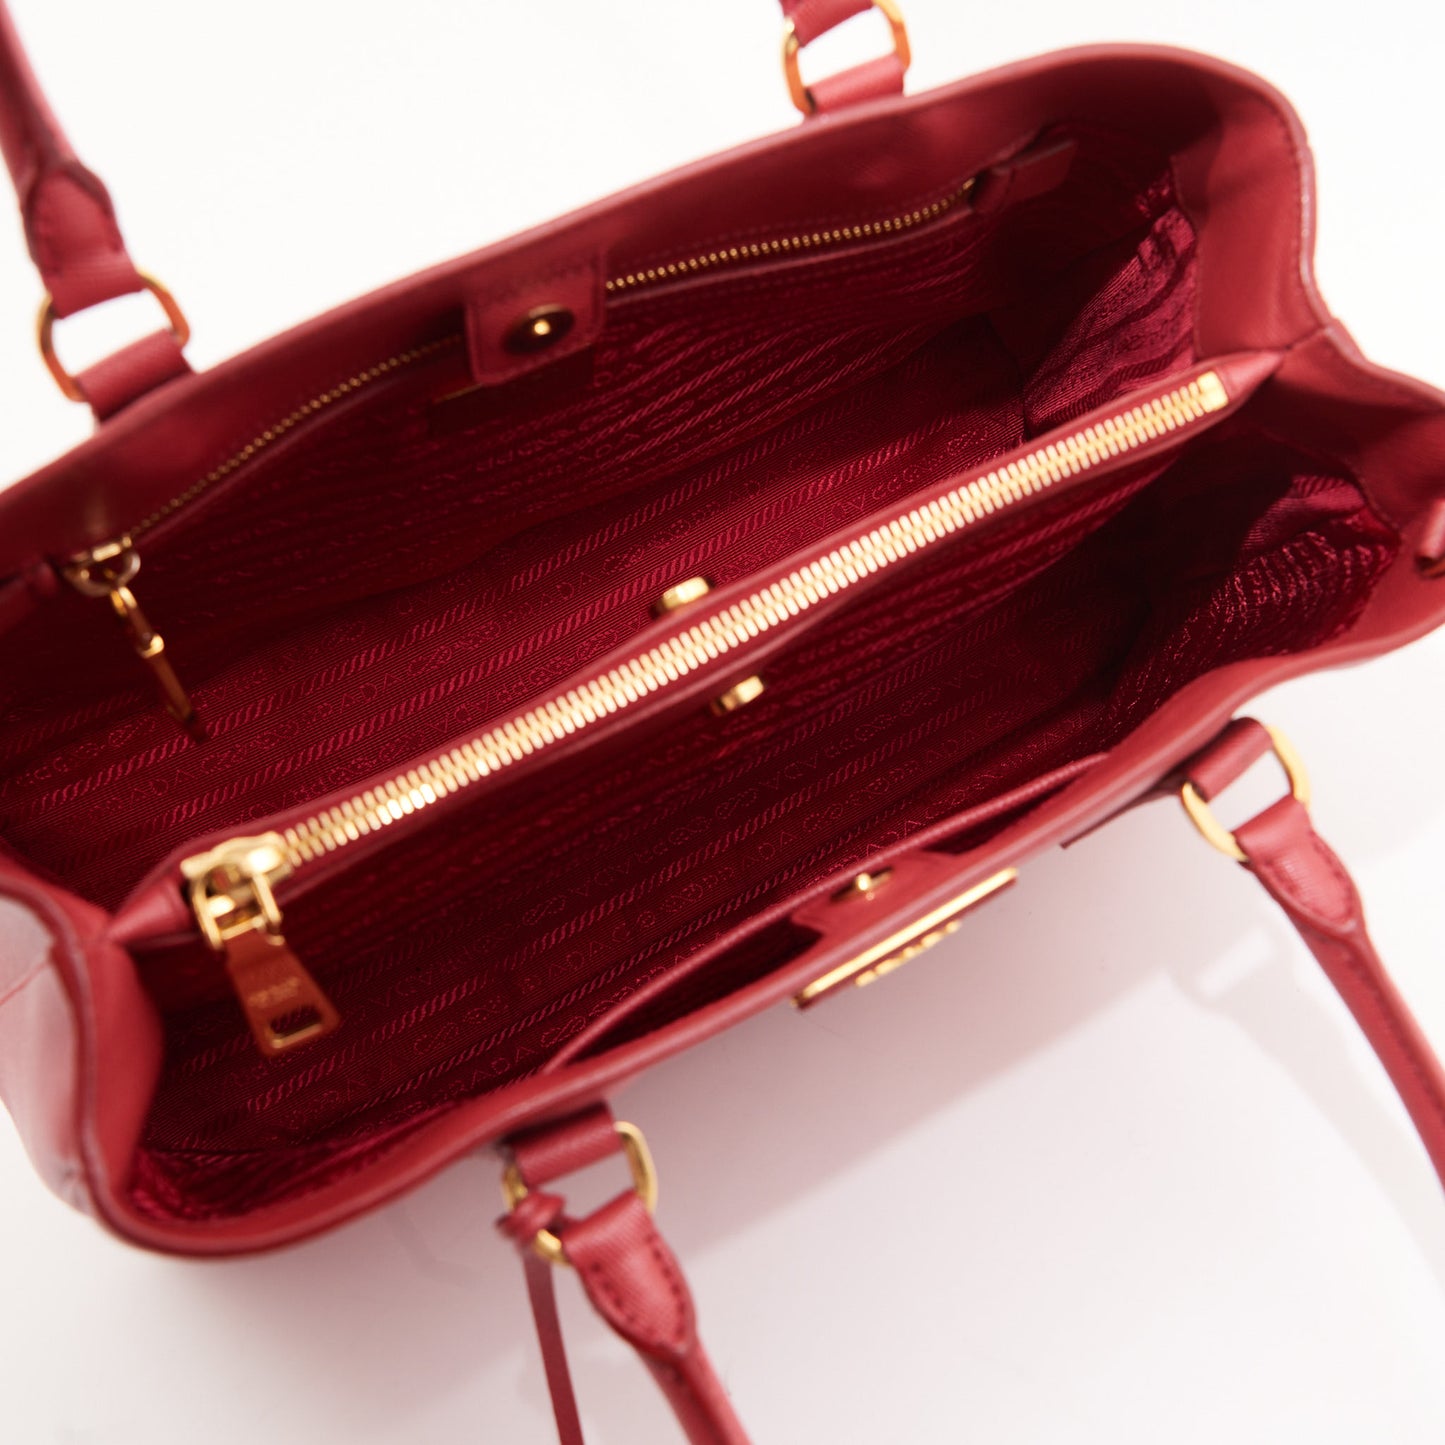 Prada Leather Saffiano Galleria Tote Bag in Red